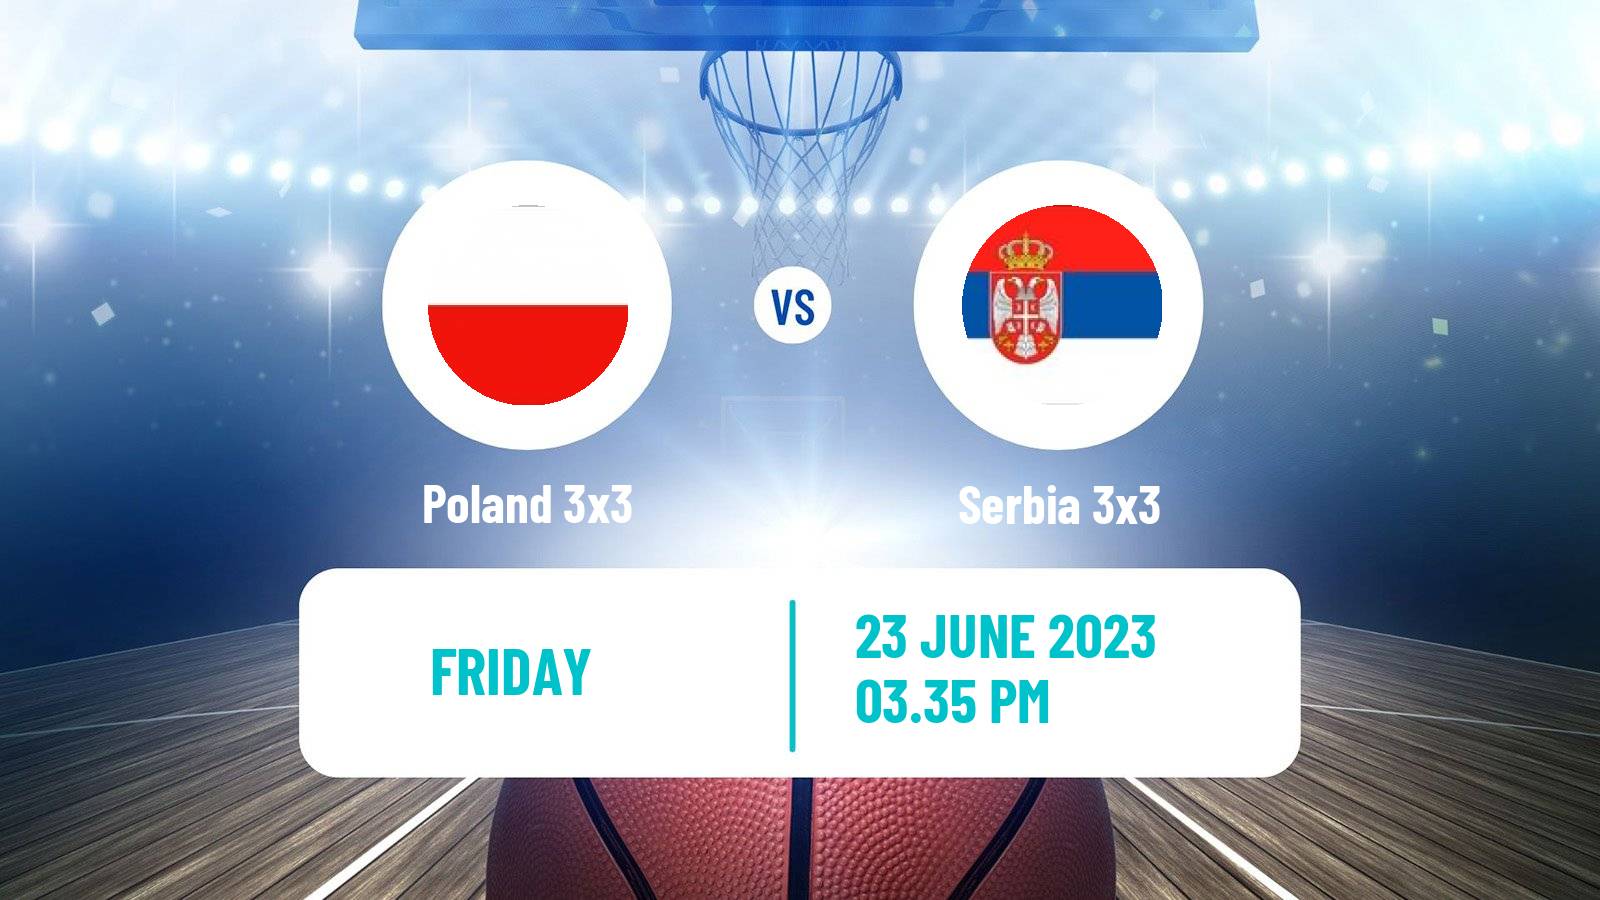 Basketball European Games 3x3  Poland 3x3 - Serbia 3x3